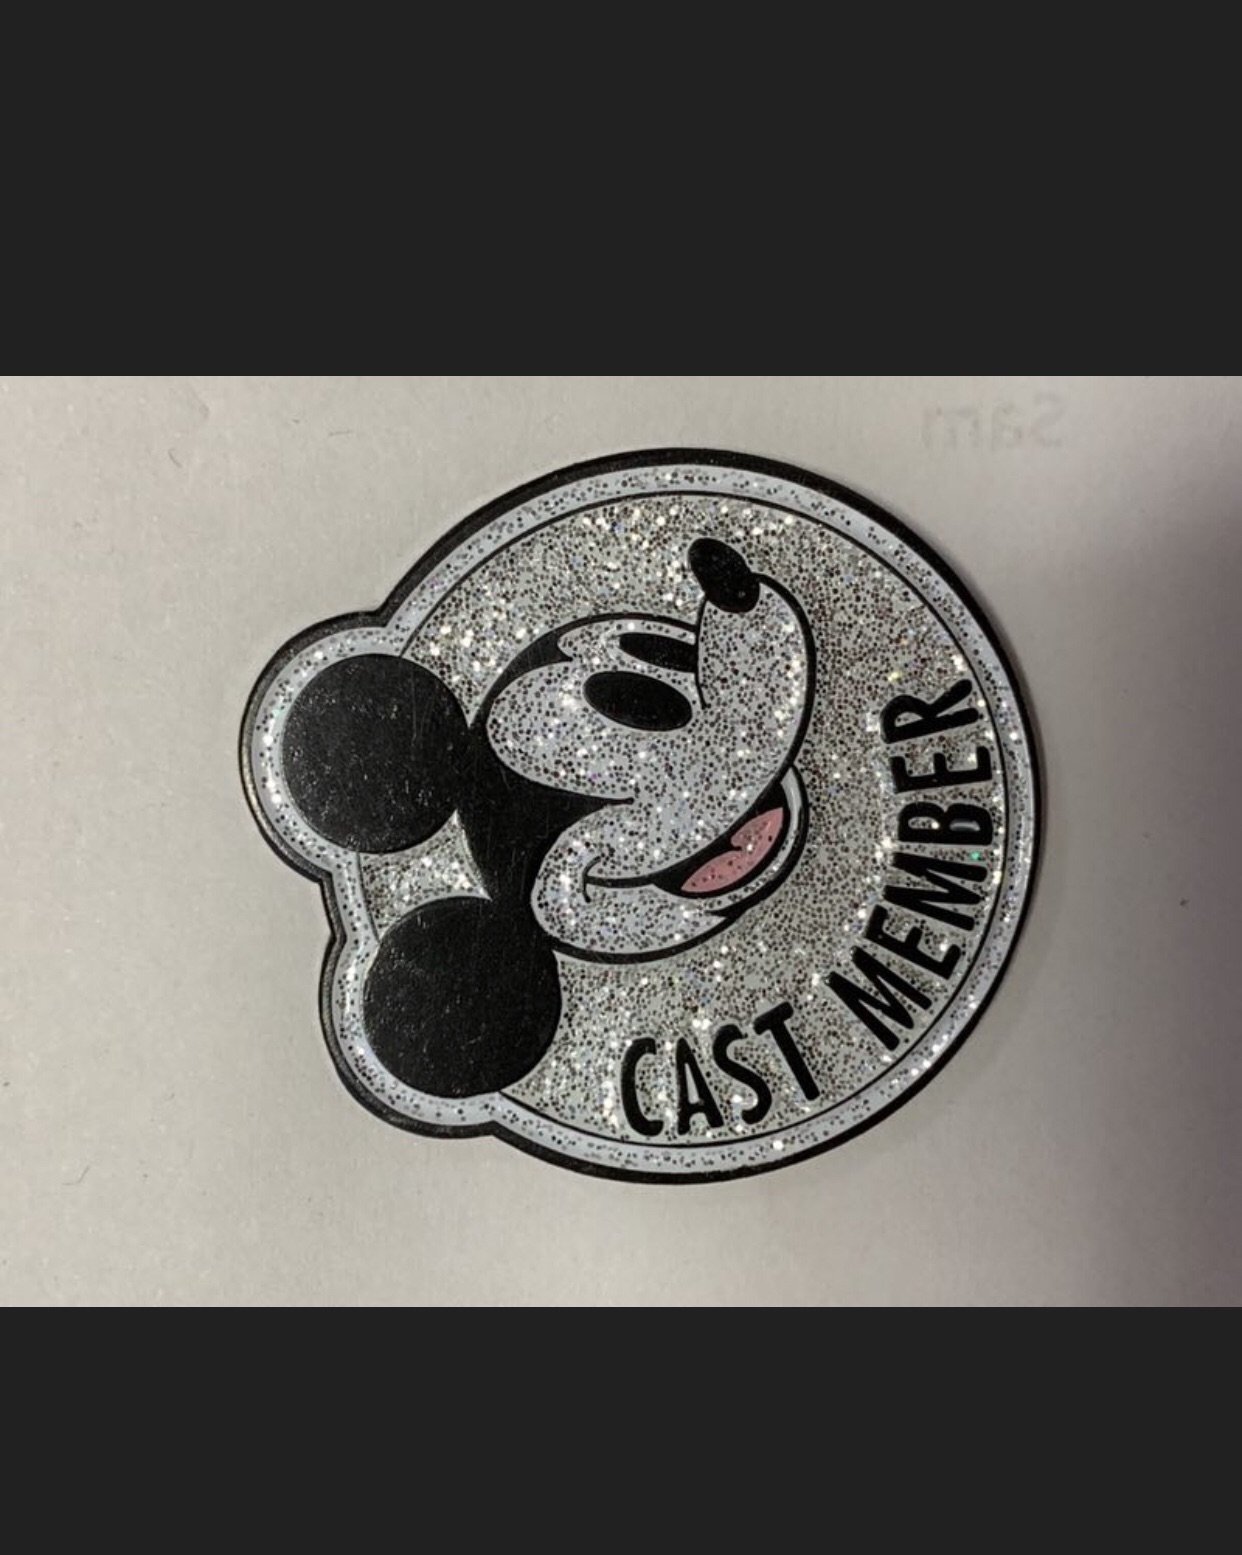 cast member pin